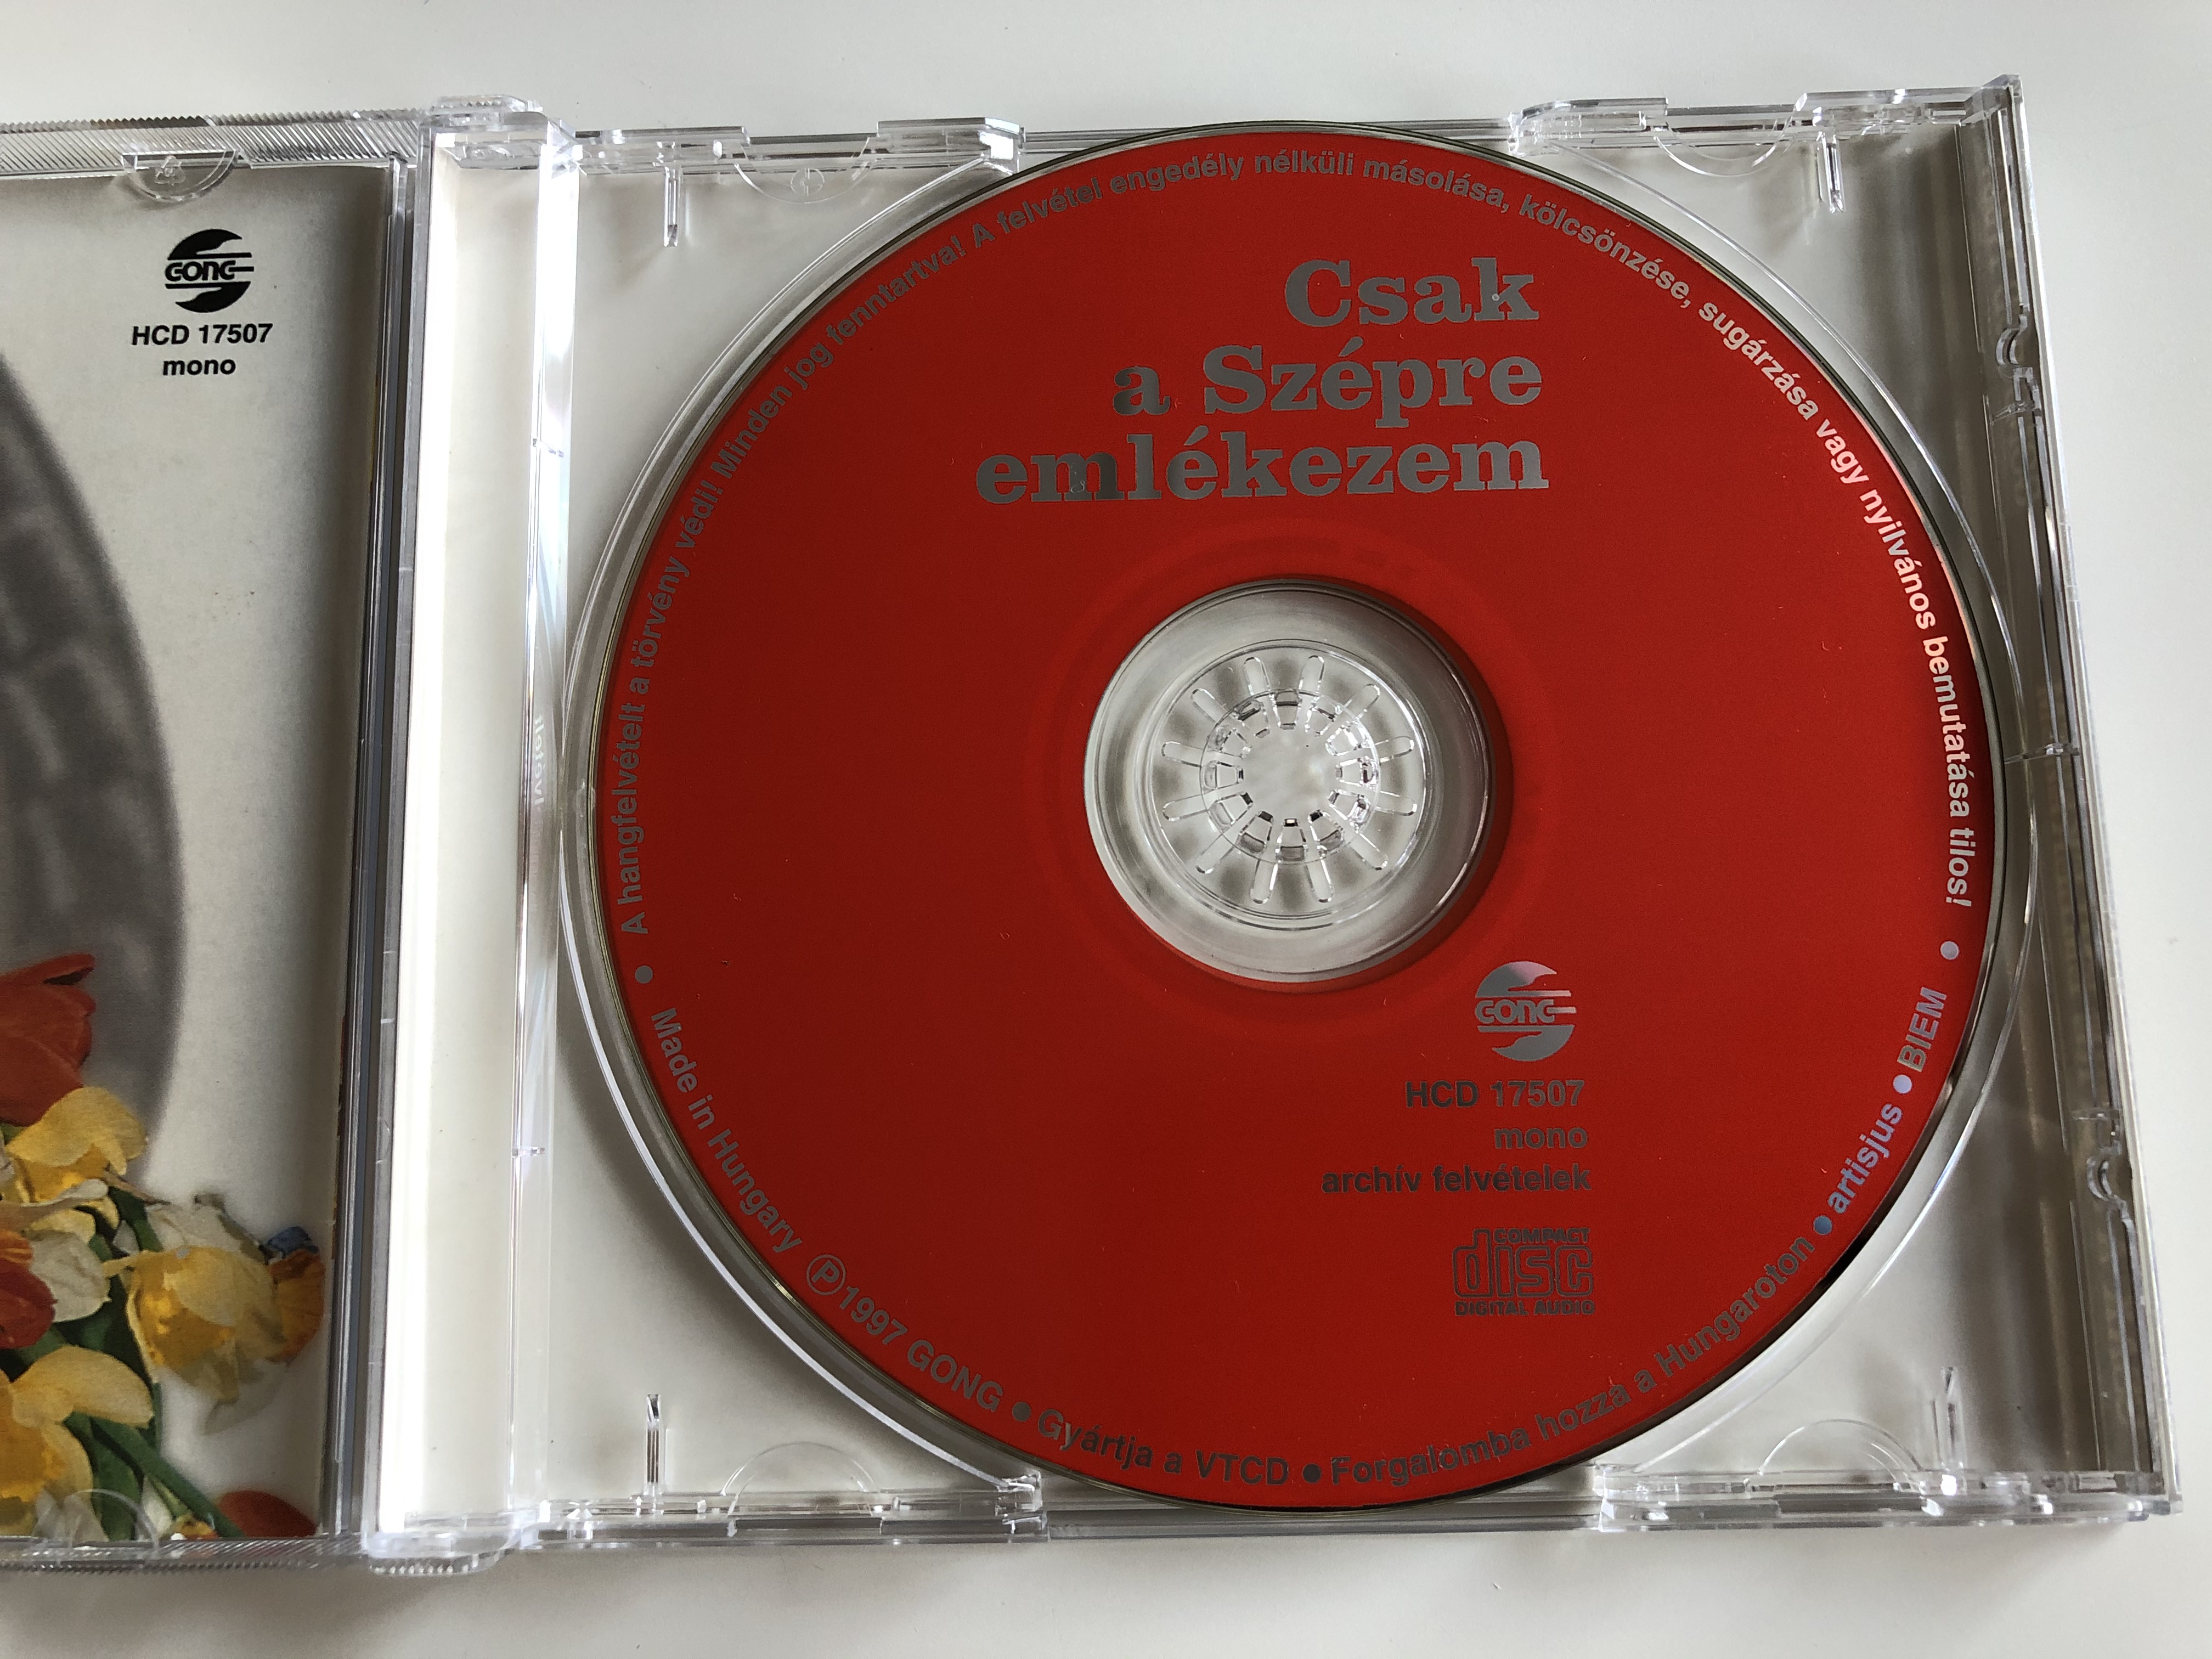 csak-a-sz-pre-eml-kezem-gong-audio-cd-1997-hcd-17507-4-.jpg